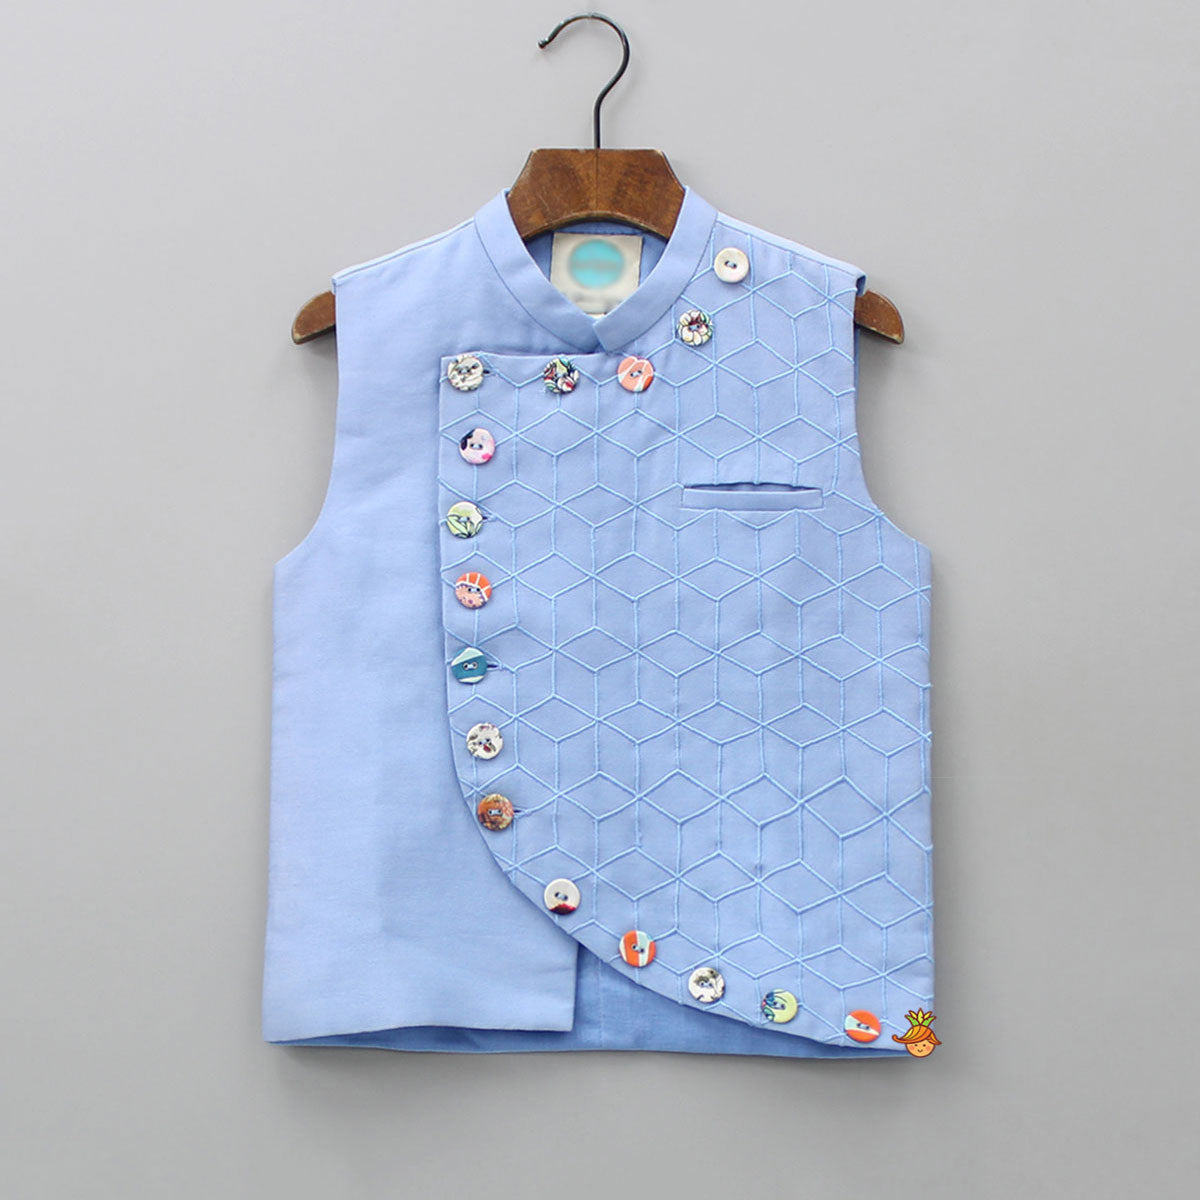 Pre Order: Side Buttons Adorned Pocket Detail Blue Jacket